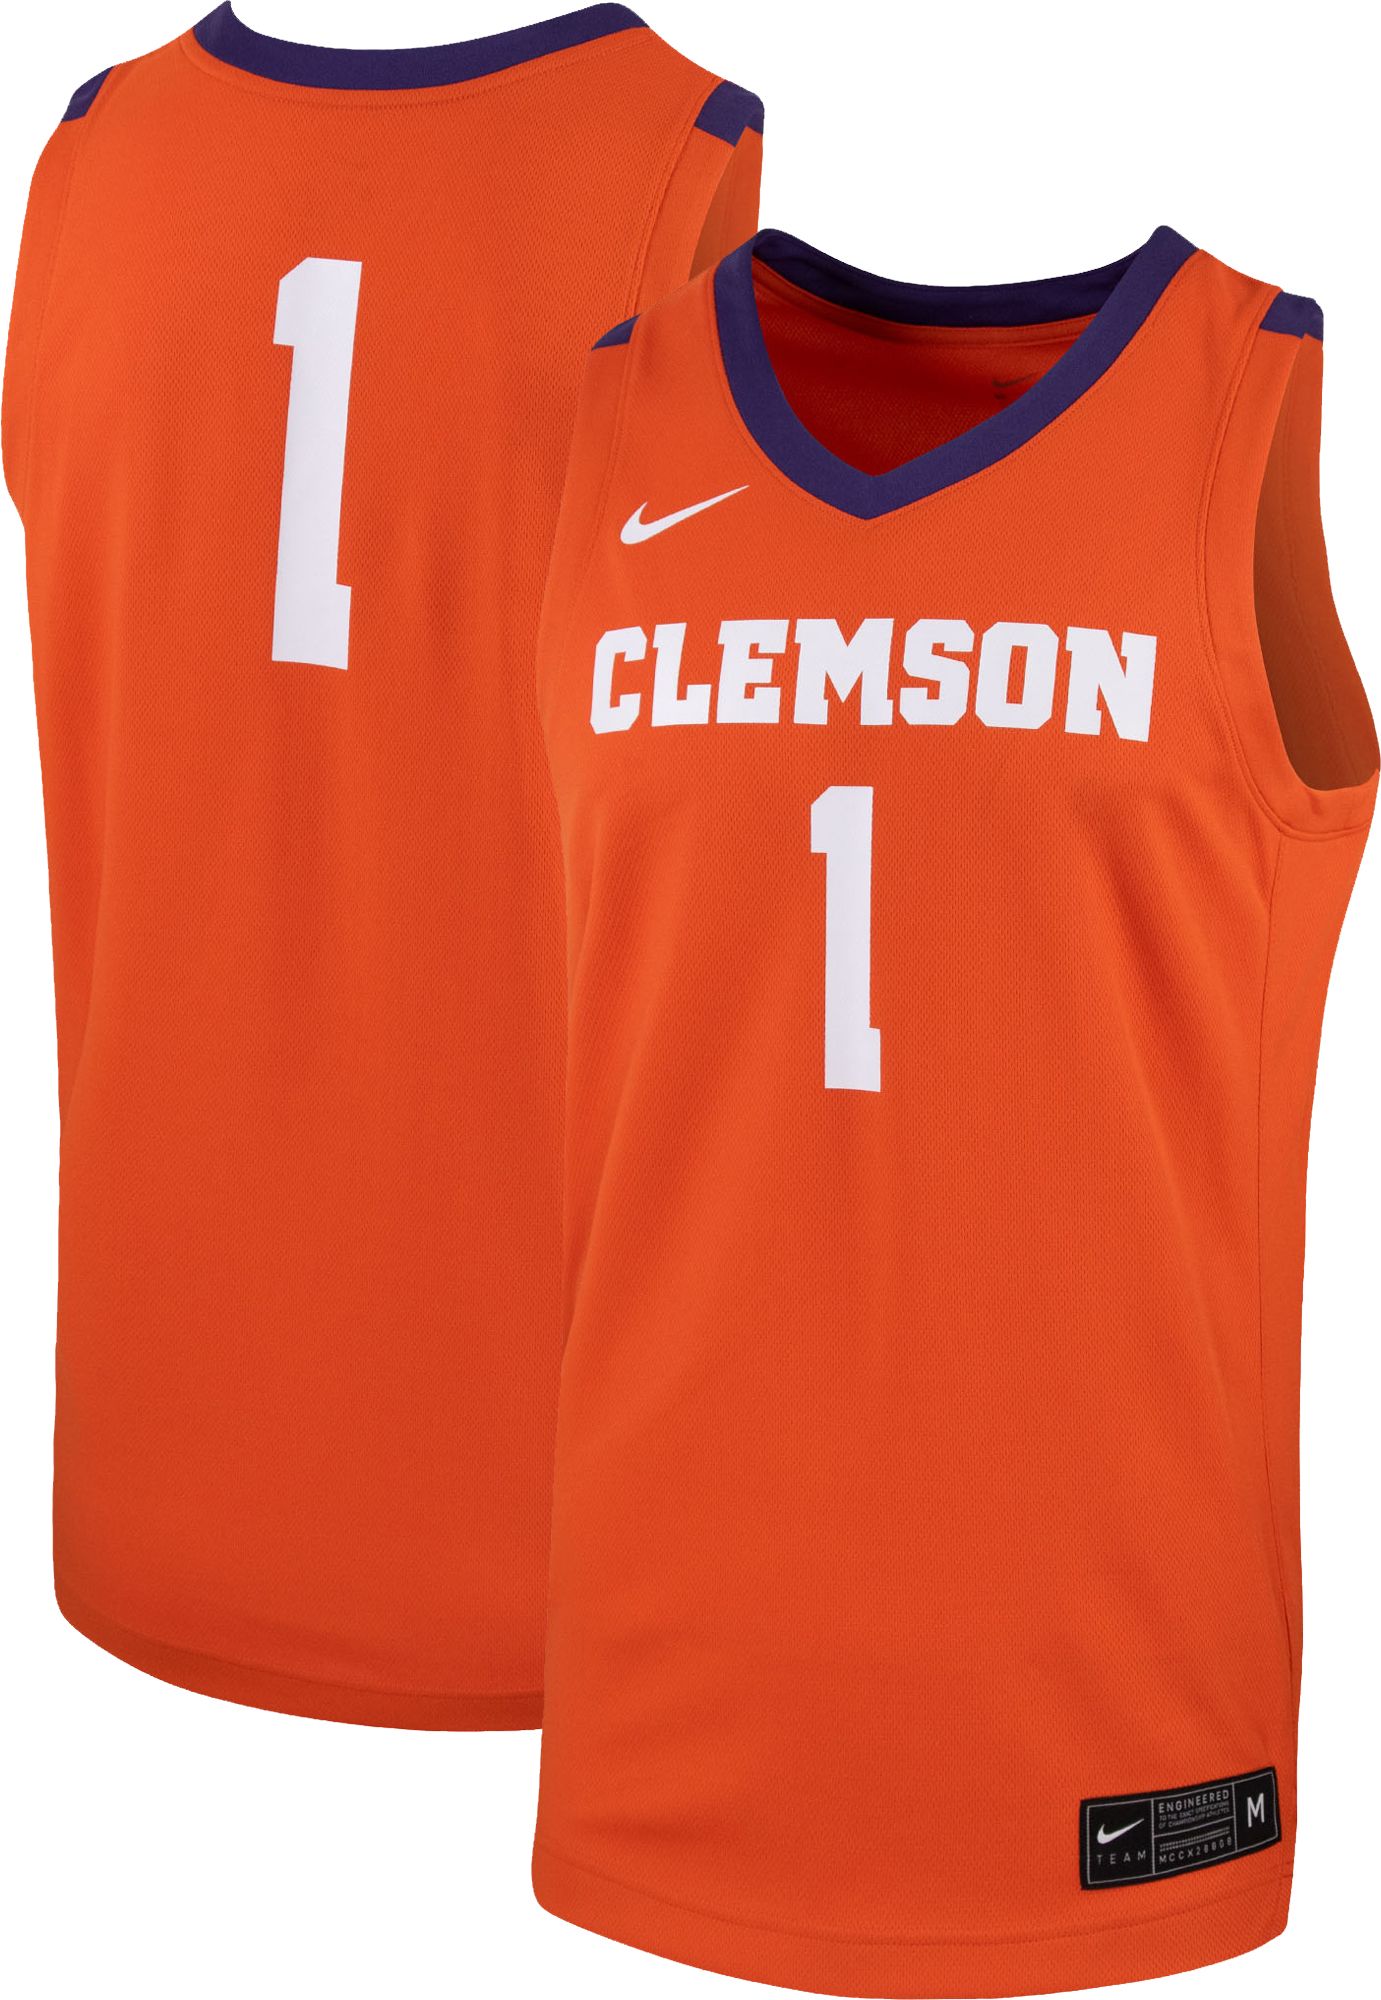 clemson basketball uniforms